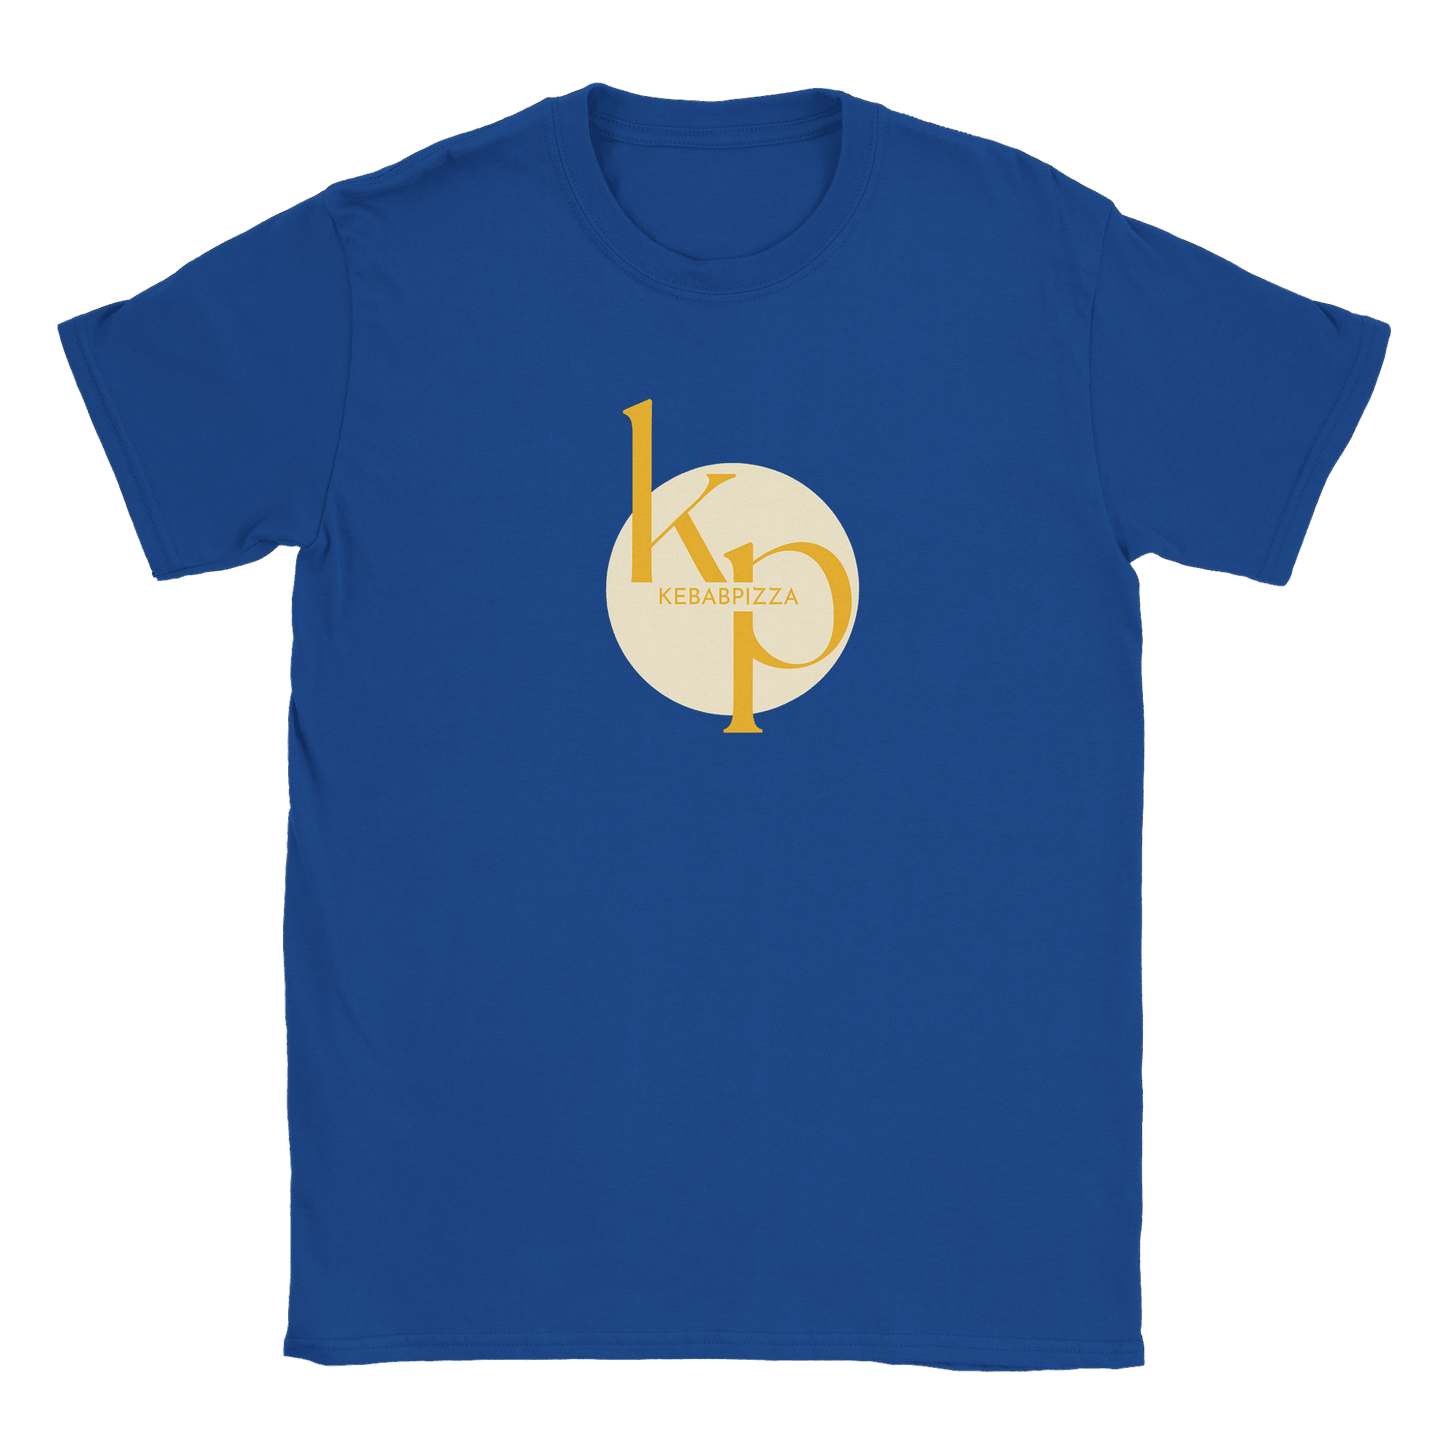 Kebabpizza - T-shirt Royal